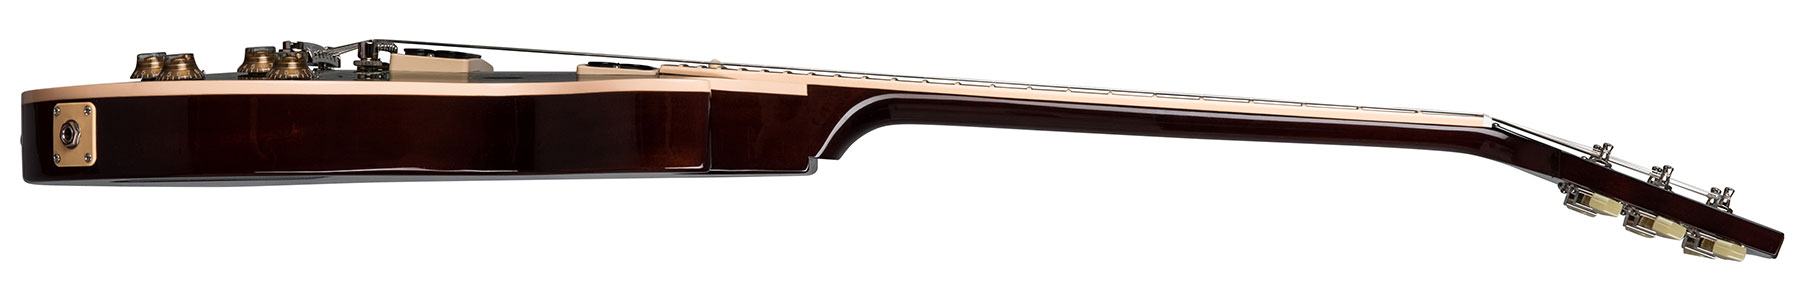 Gibson Slash Les Paul 2018 Signature Ltd Hh Ht Rw - Anaconda Burst - Guitare Électrique Single Cut - Variation 2